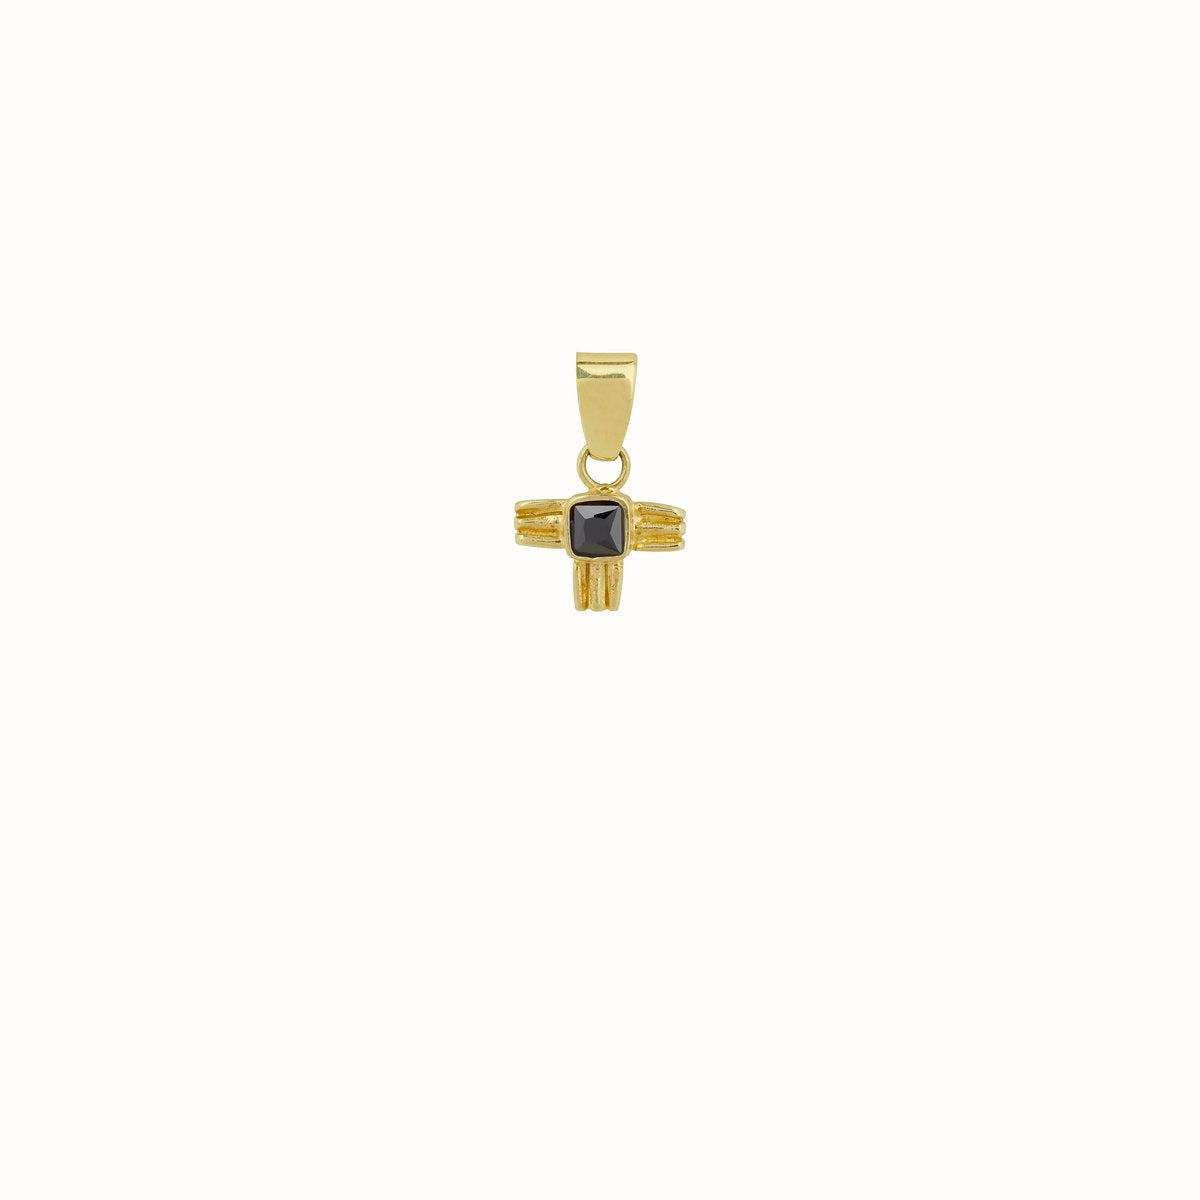 Bij Boetiek Aniek shop je mooie 14K gold plated silver sterling kettingen met hangers (pendant). Je kan de gouden ketting combineren met elke hanger die je mooi vindt. De kettingen en hangers zijn los te bestellen.  De Sculpted Wing pendant is perfect te combineren met de Curb Necklace, Box Necklace of Figaro Necklace.